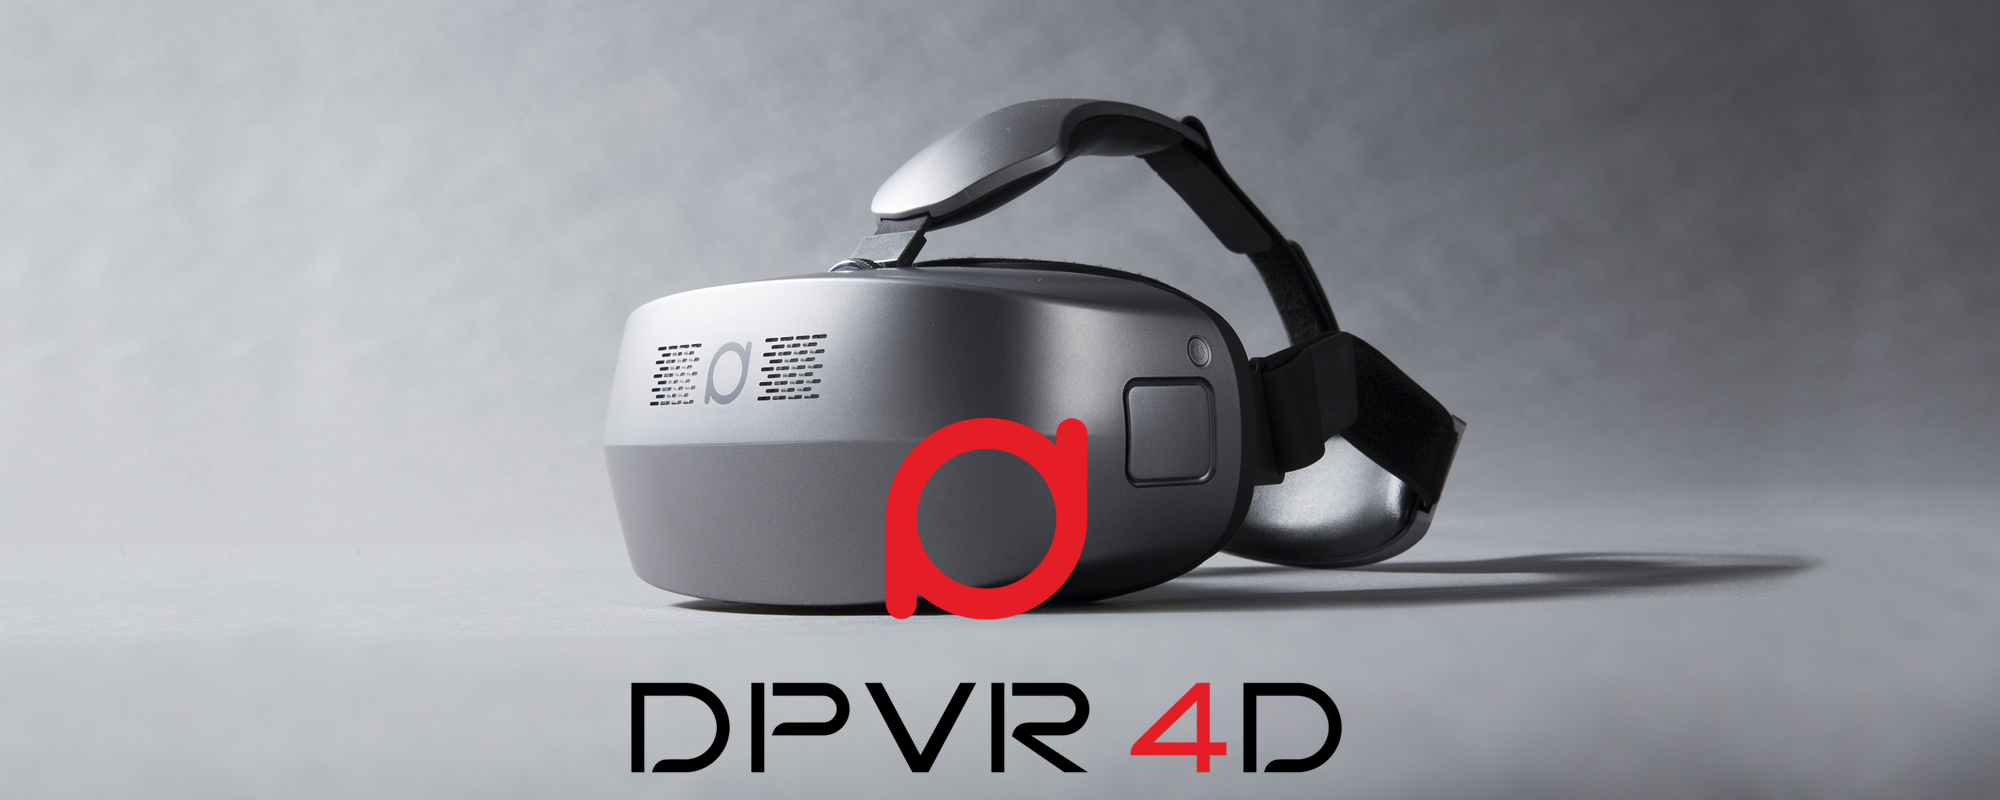 一体型VRヘッドマウントディスプレイ「DPVR 4D」が気になる – 合同会社 